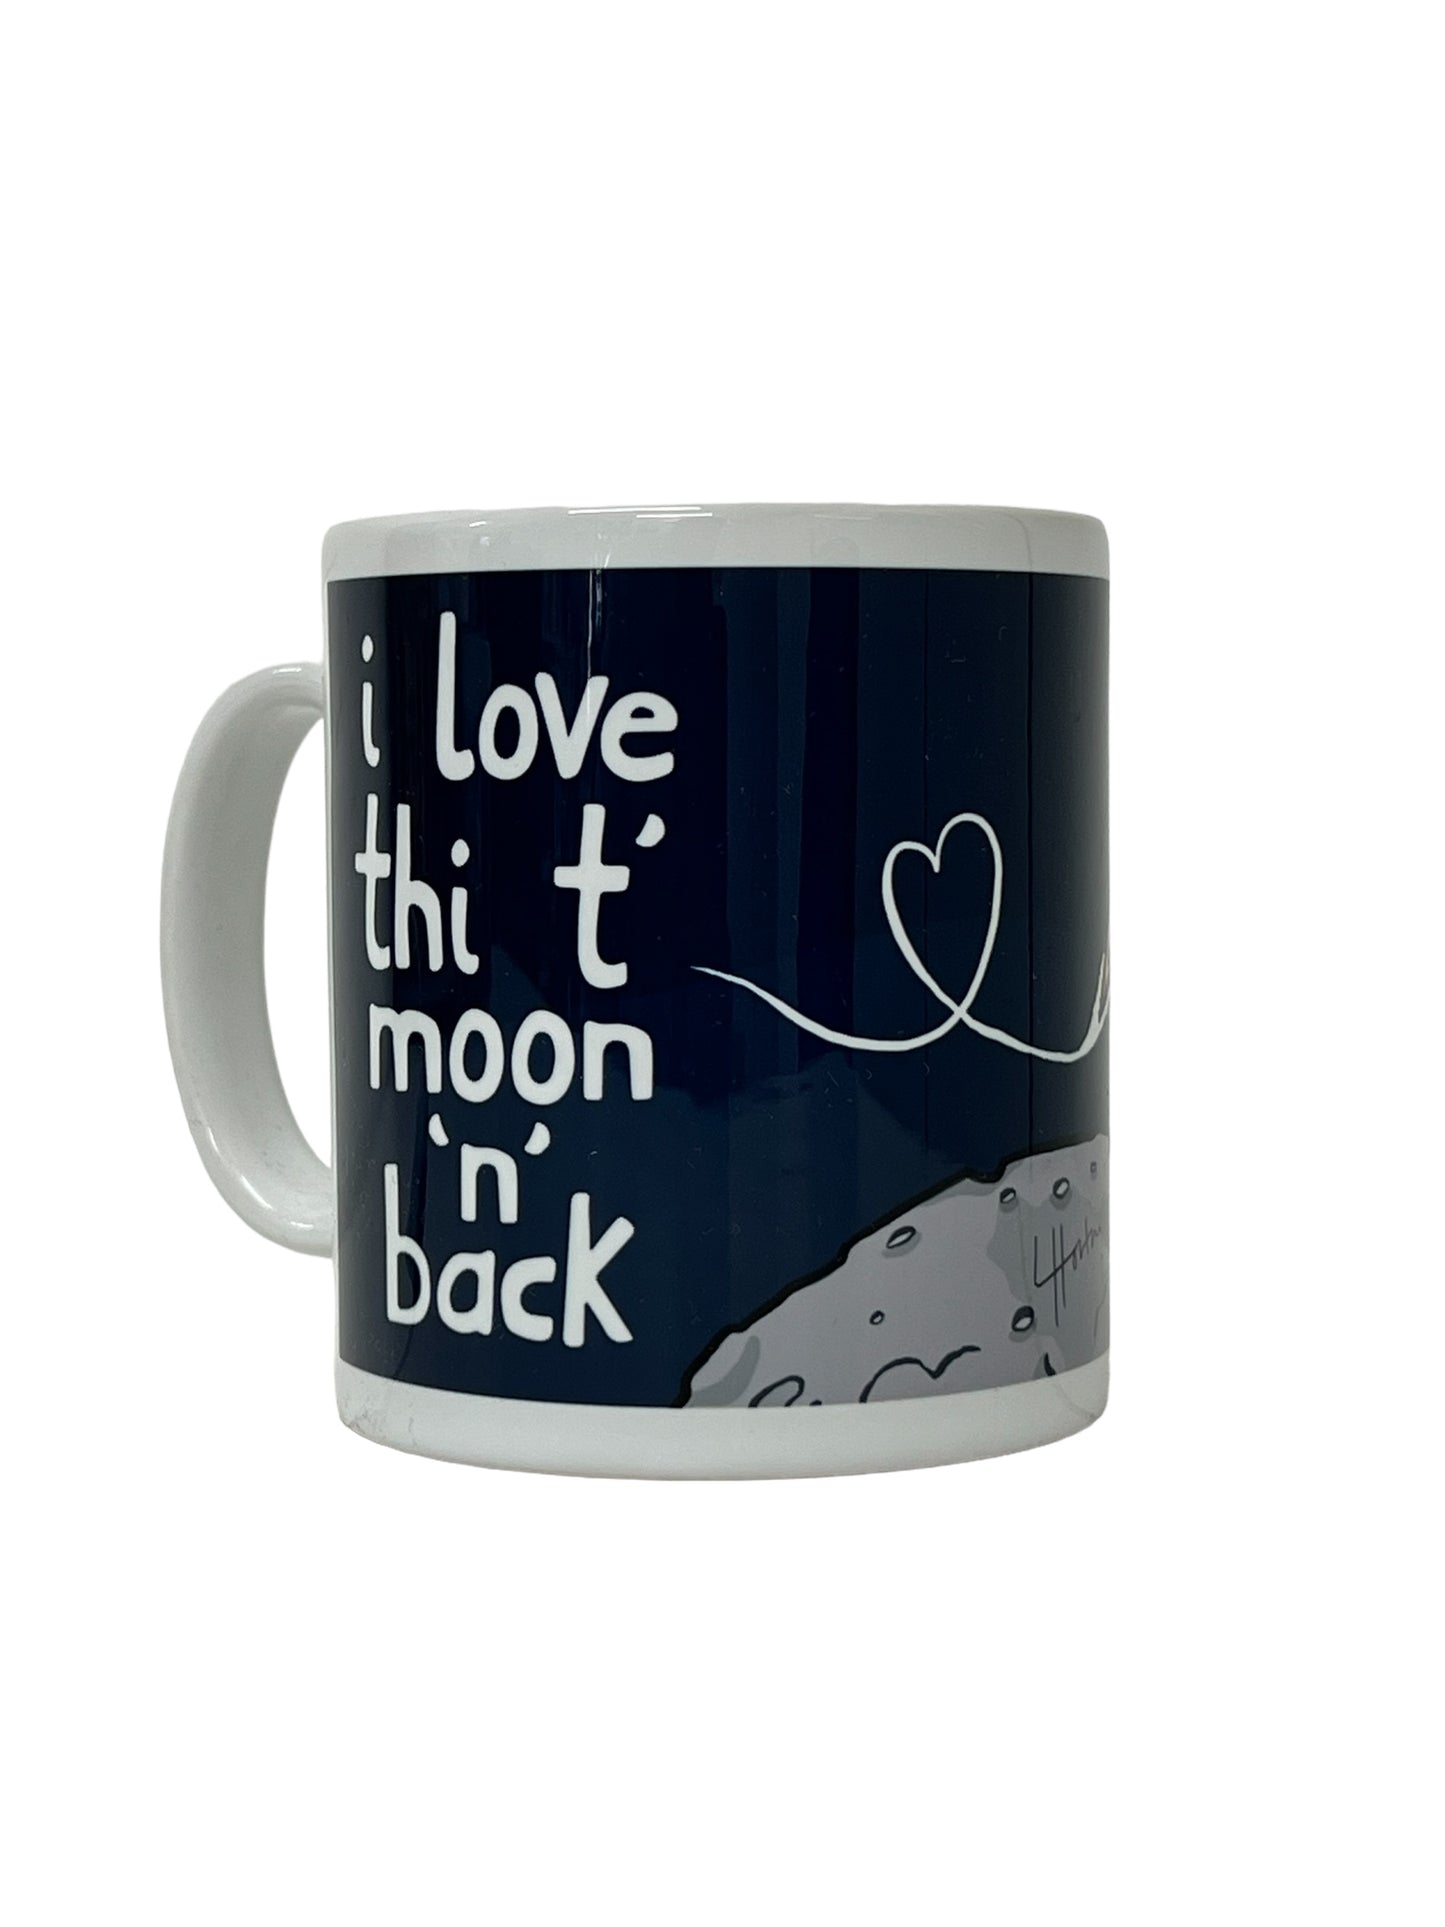 Love Thi T Moon N Back - Yorkshire Slang Mug - Luke Horton